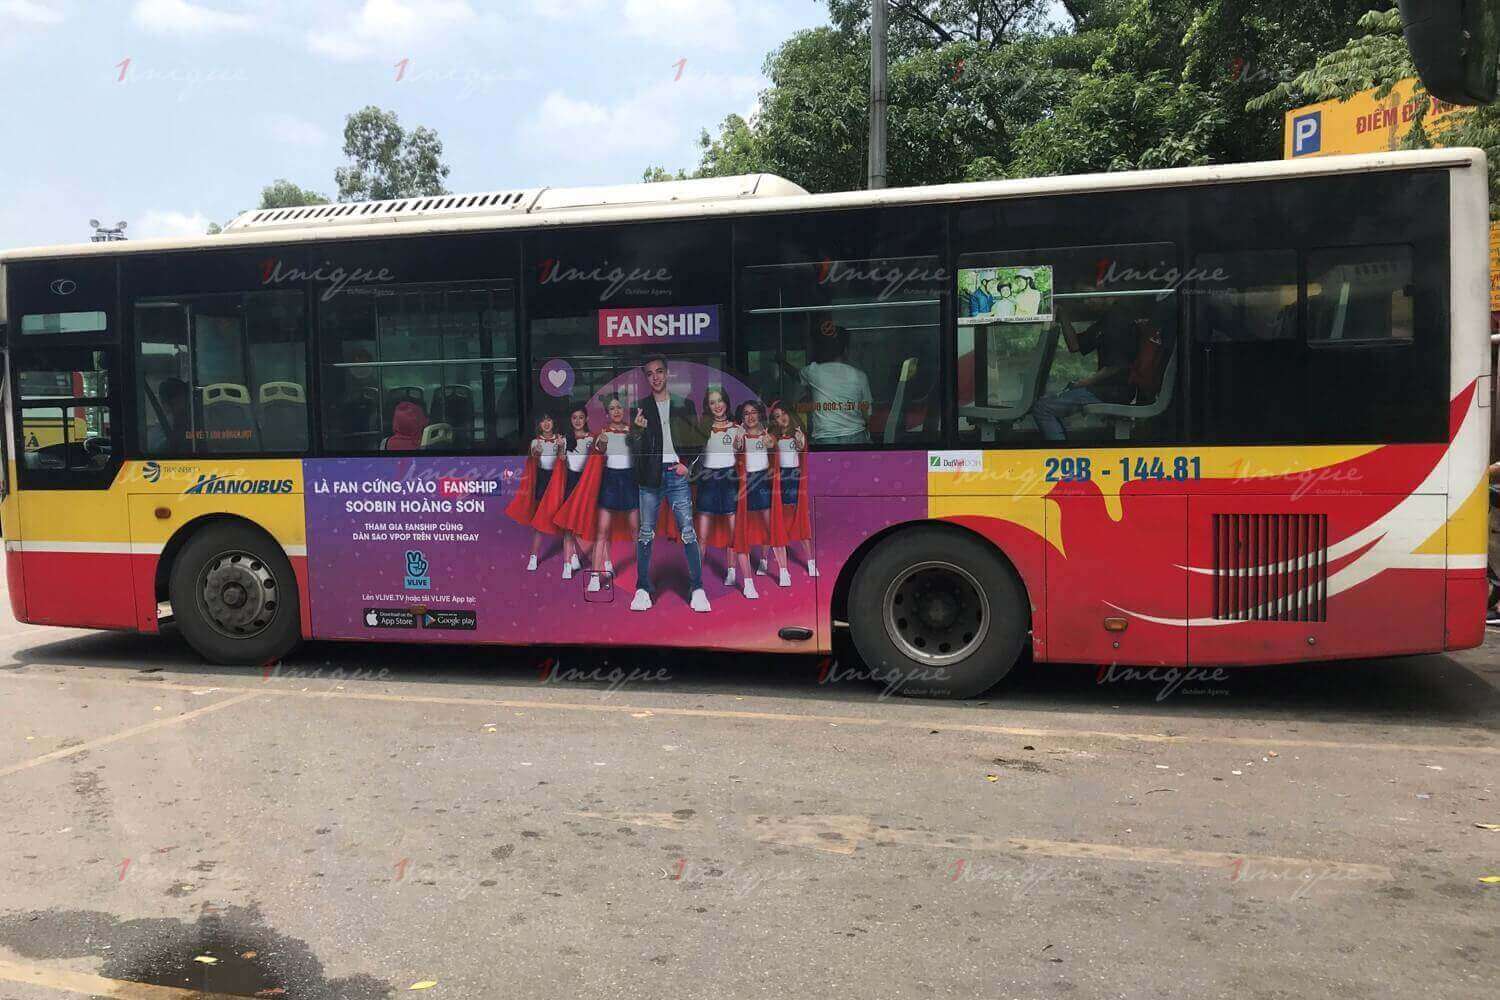  Vlive Fanship quảng cáo trên xe buýt cực sáng tạo và ấn tượng